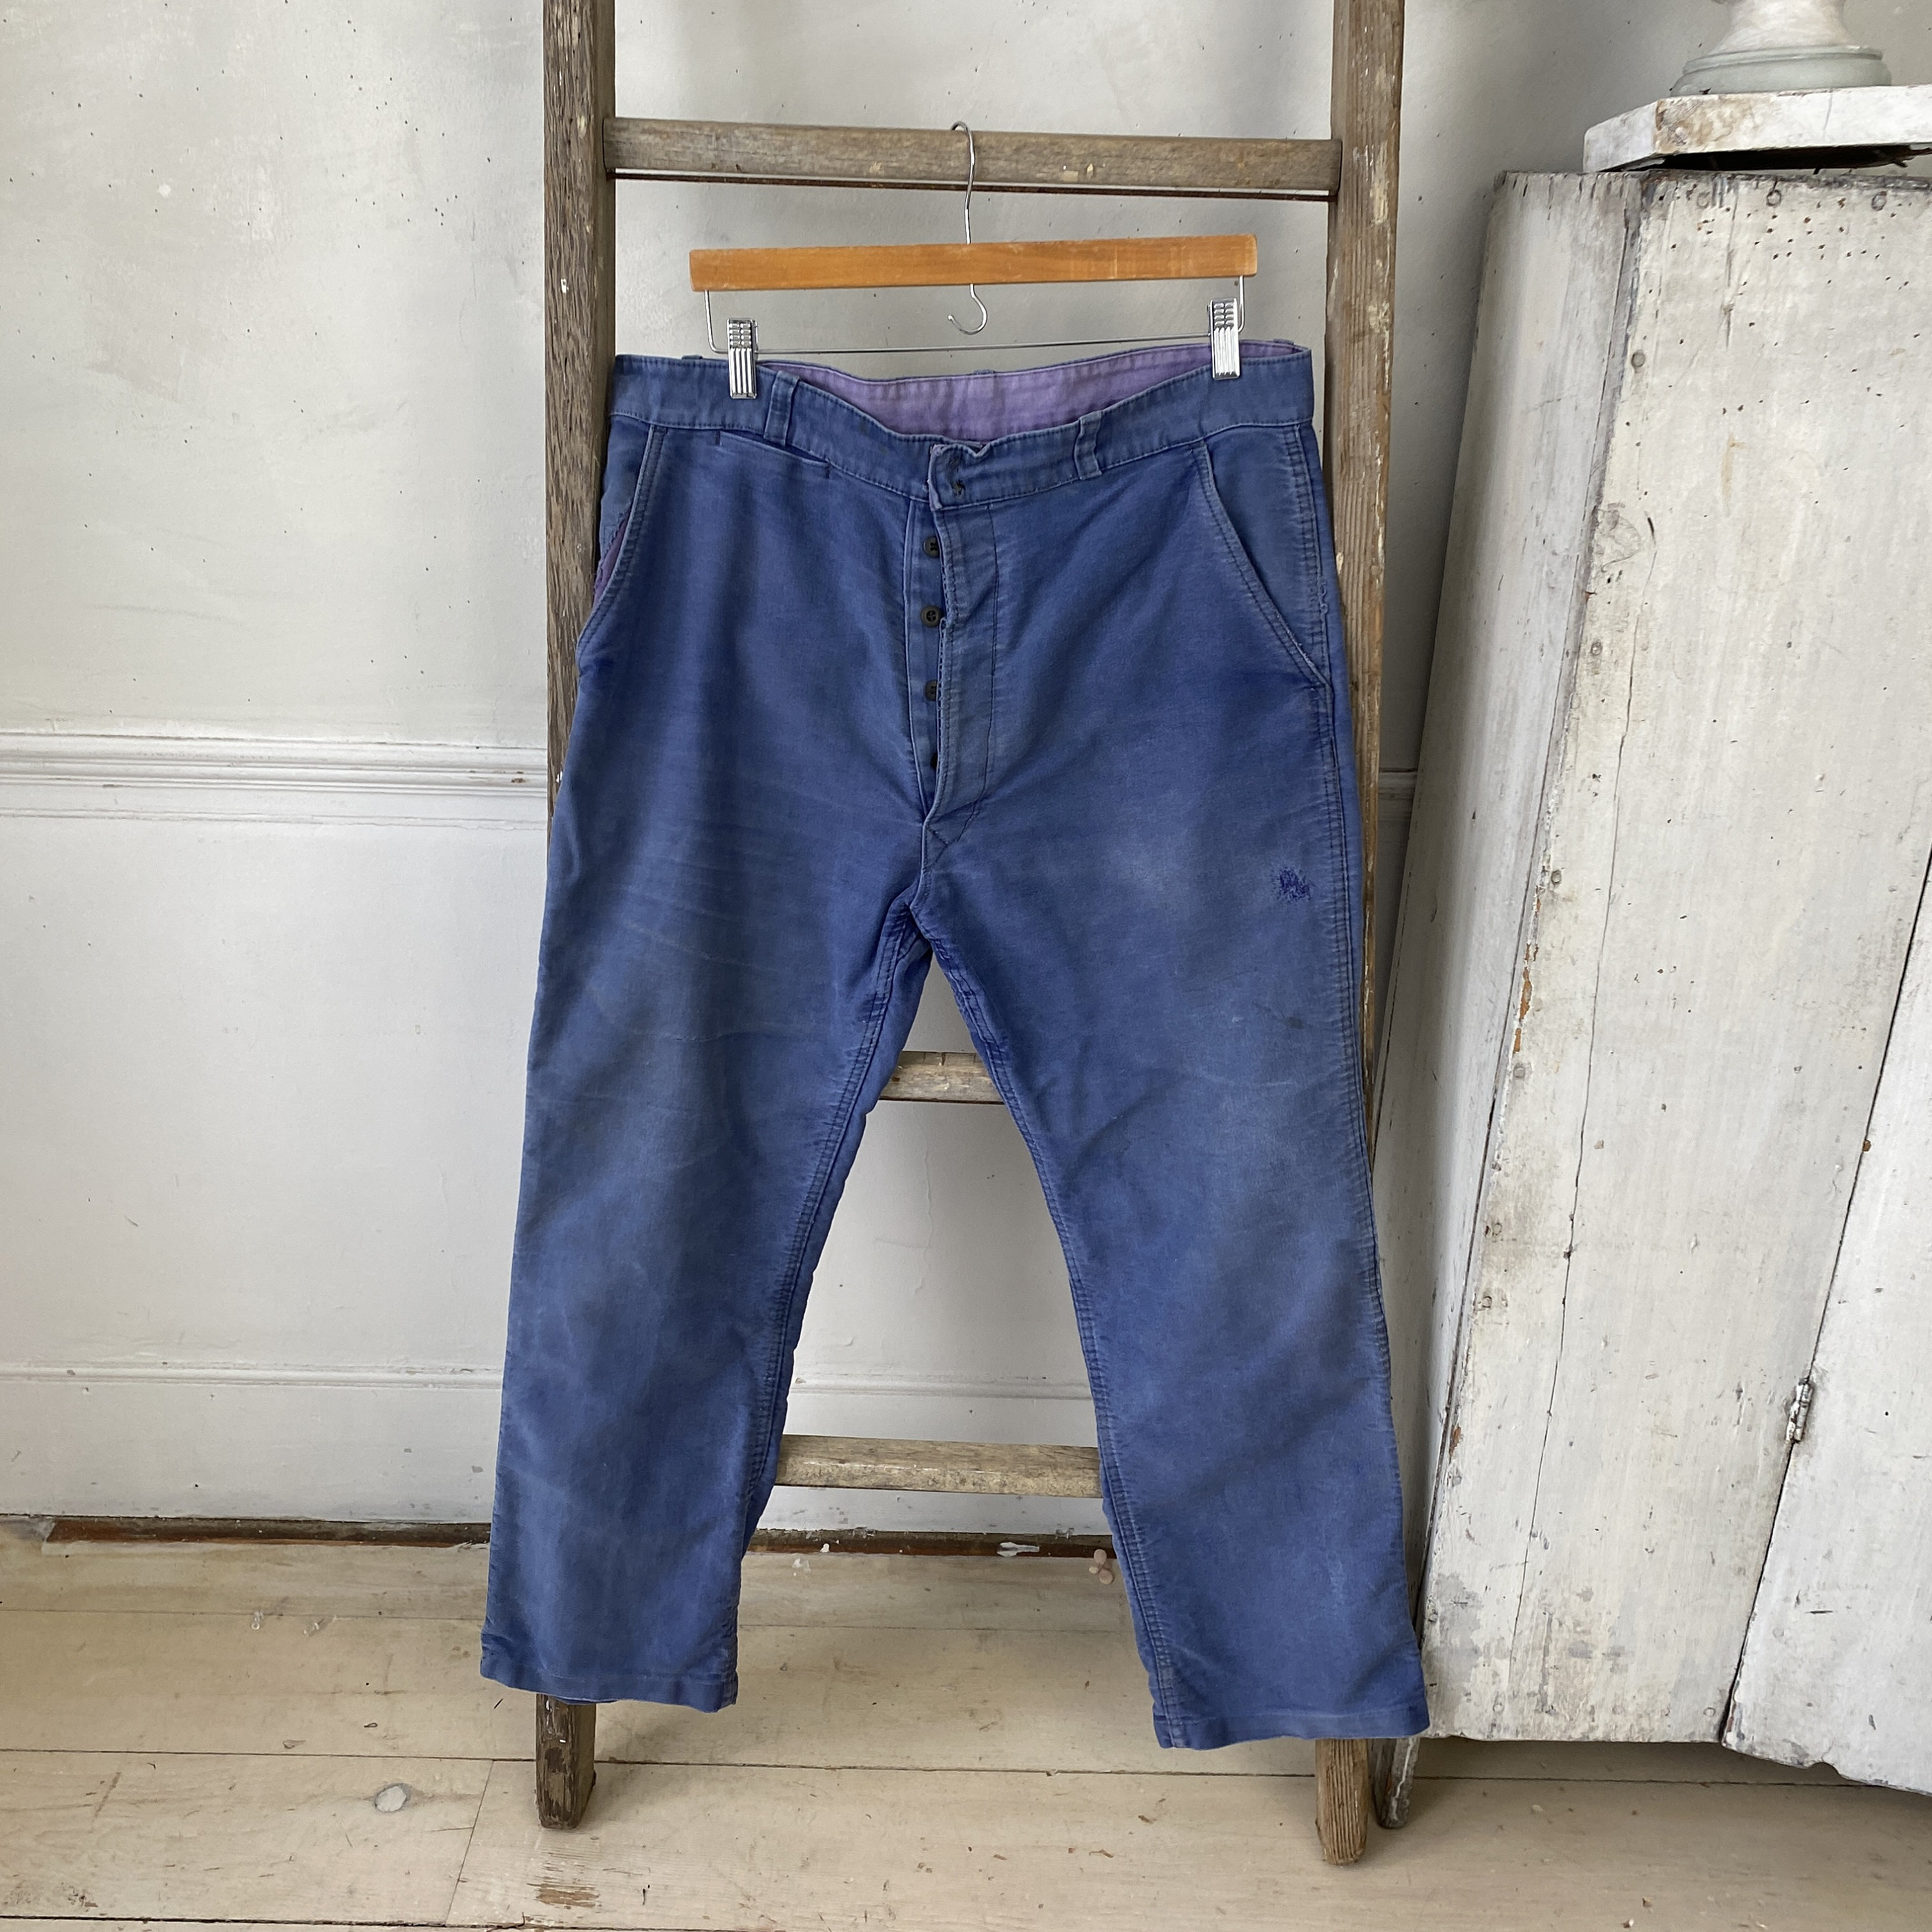 Amazing Blue Moleskin Pants 1930s Work Wear Workwear French